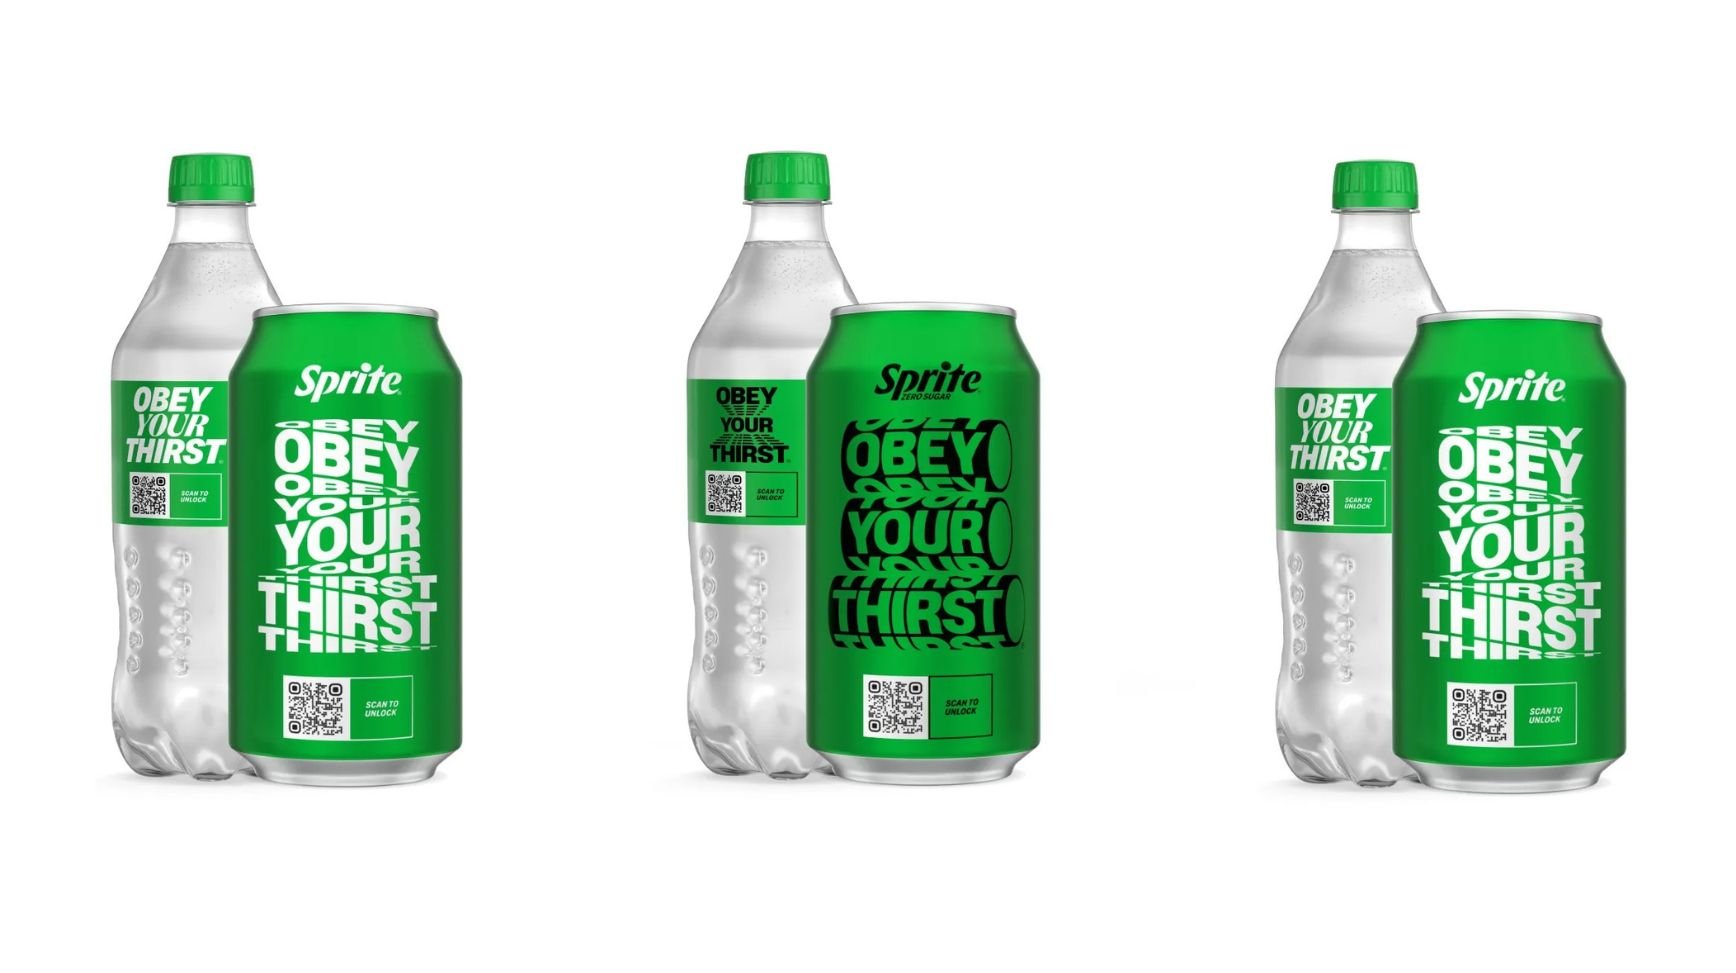 Sprit komt weer met een Obey Your Thirst campagne met vier limited edition-verpakkingen.